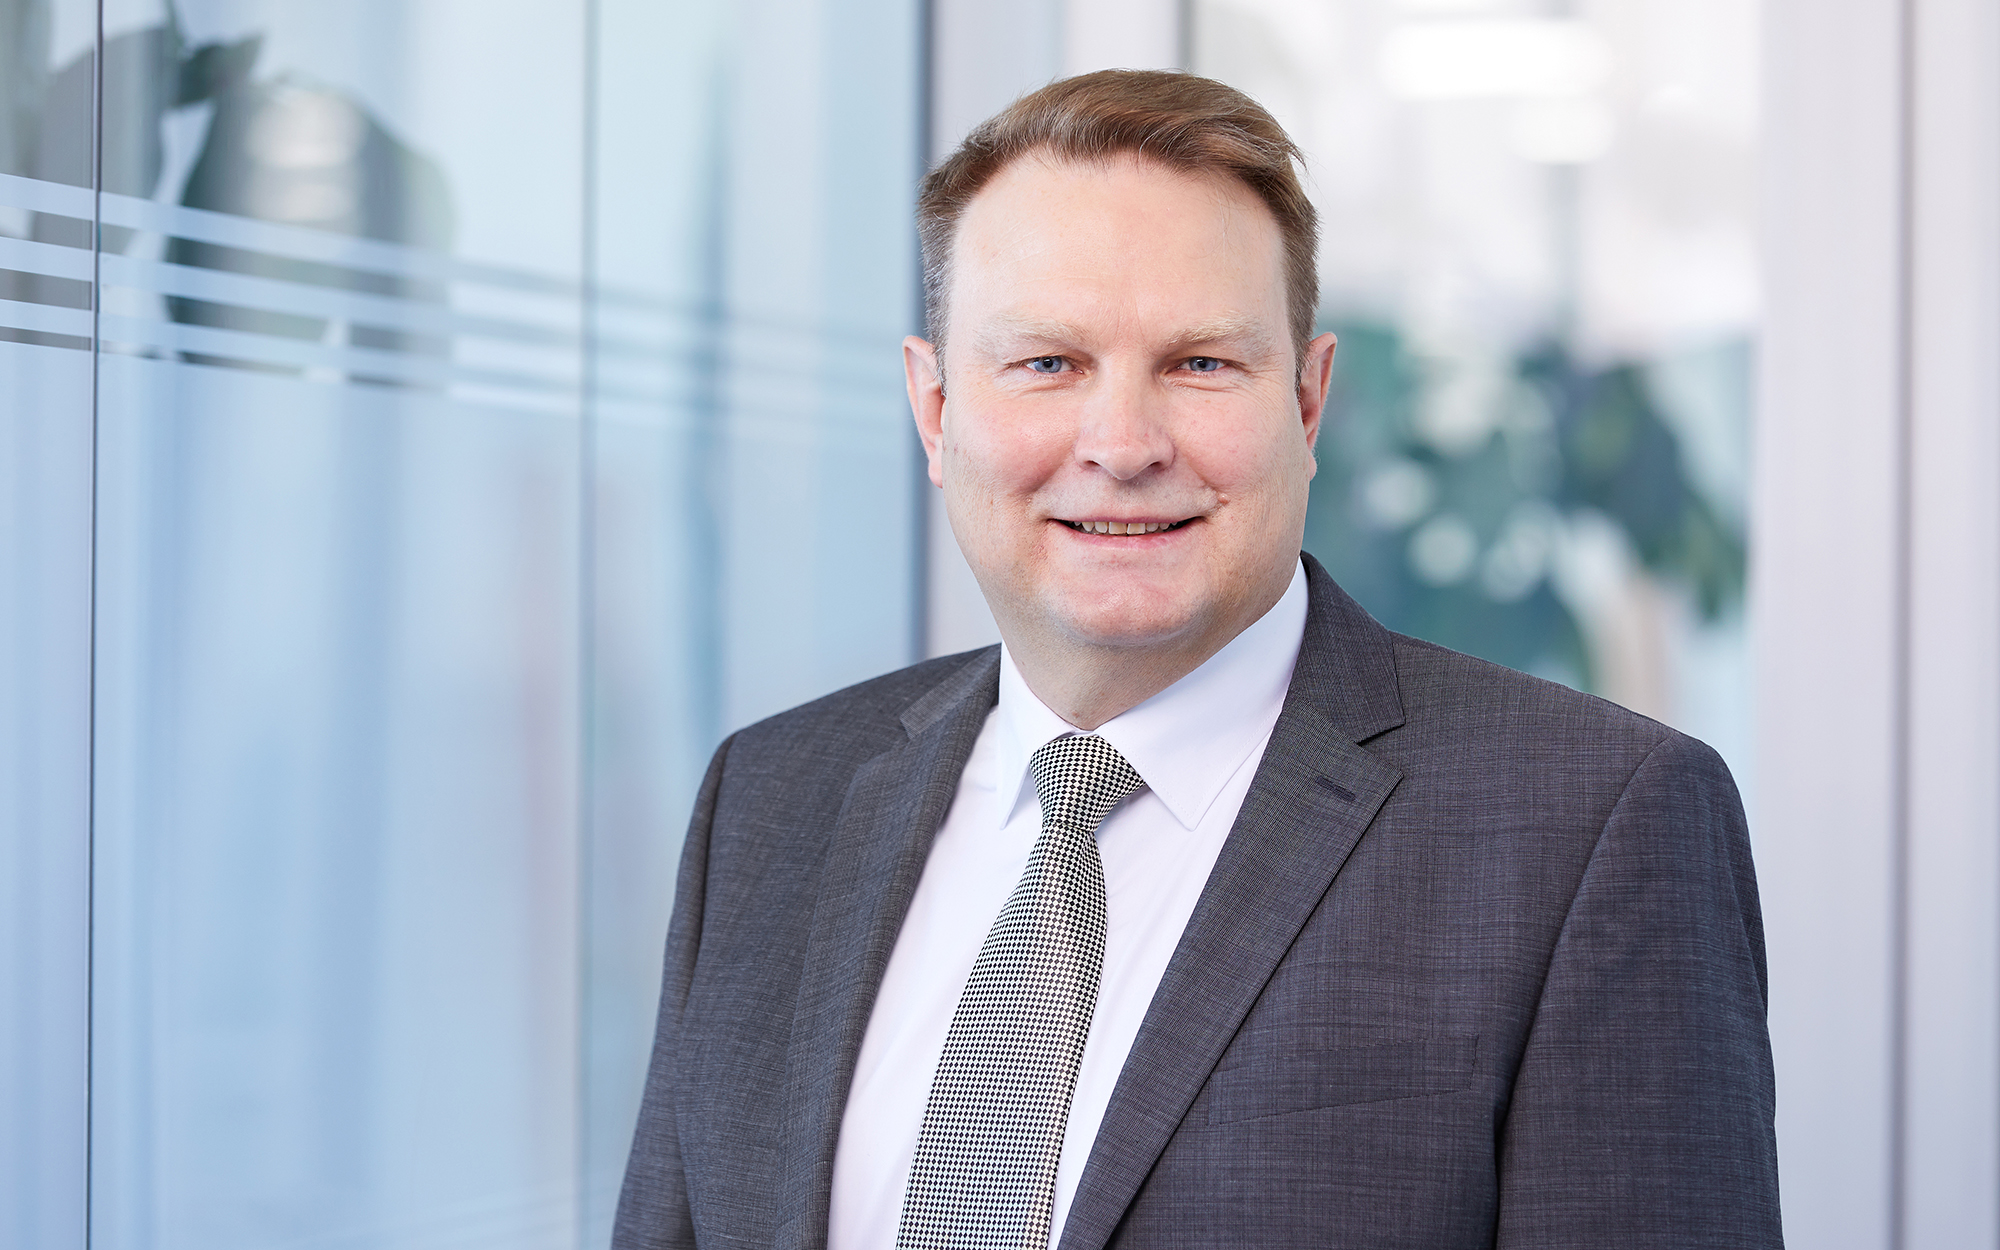 Robert Brier, CEO of Grenzebach BSH GmbH